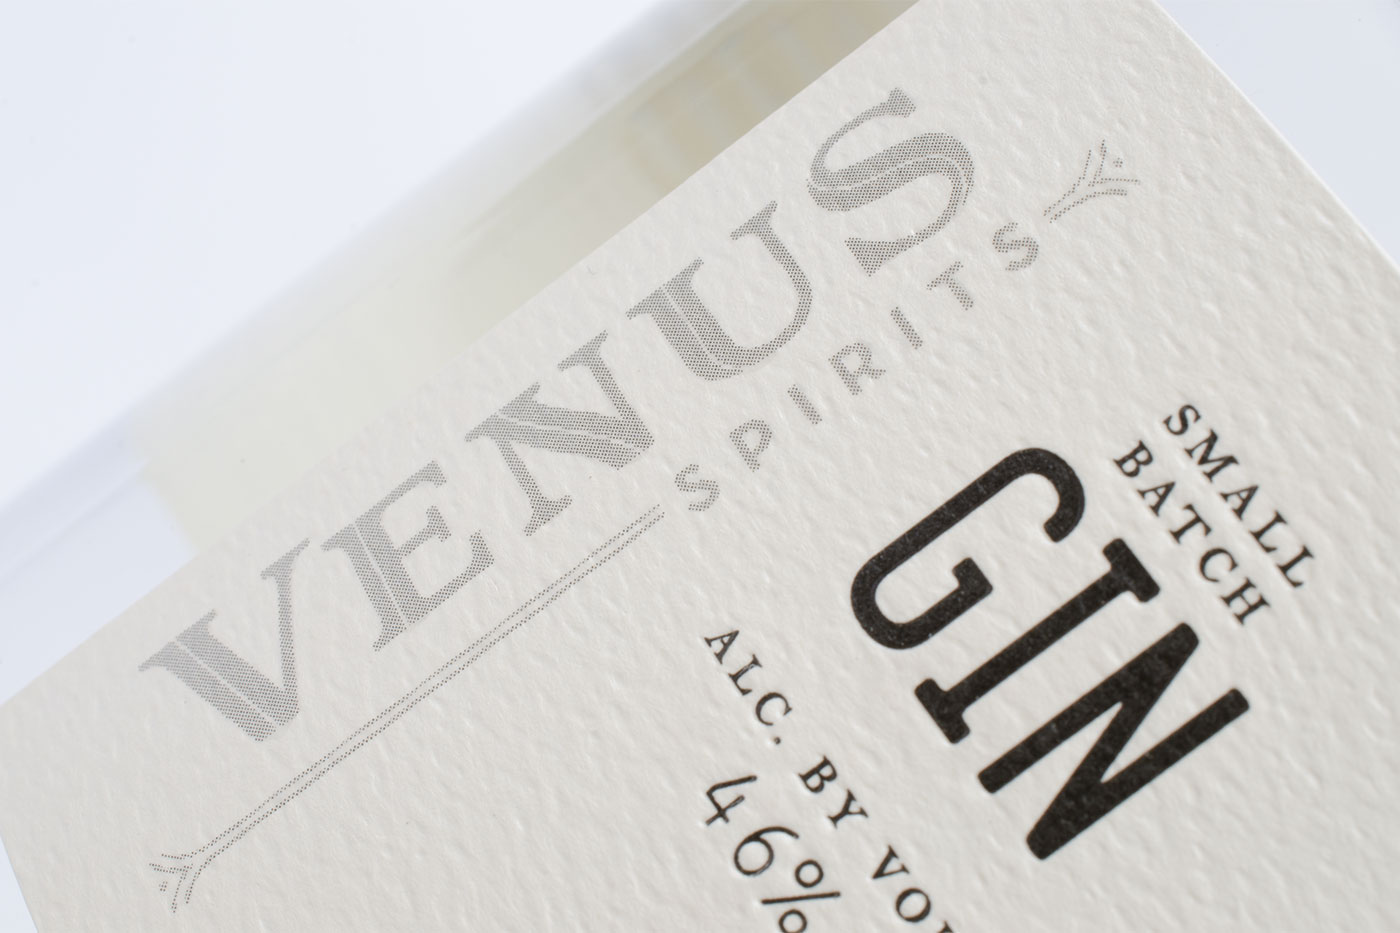 Venus Spirits Gin packaging detail